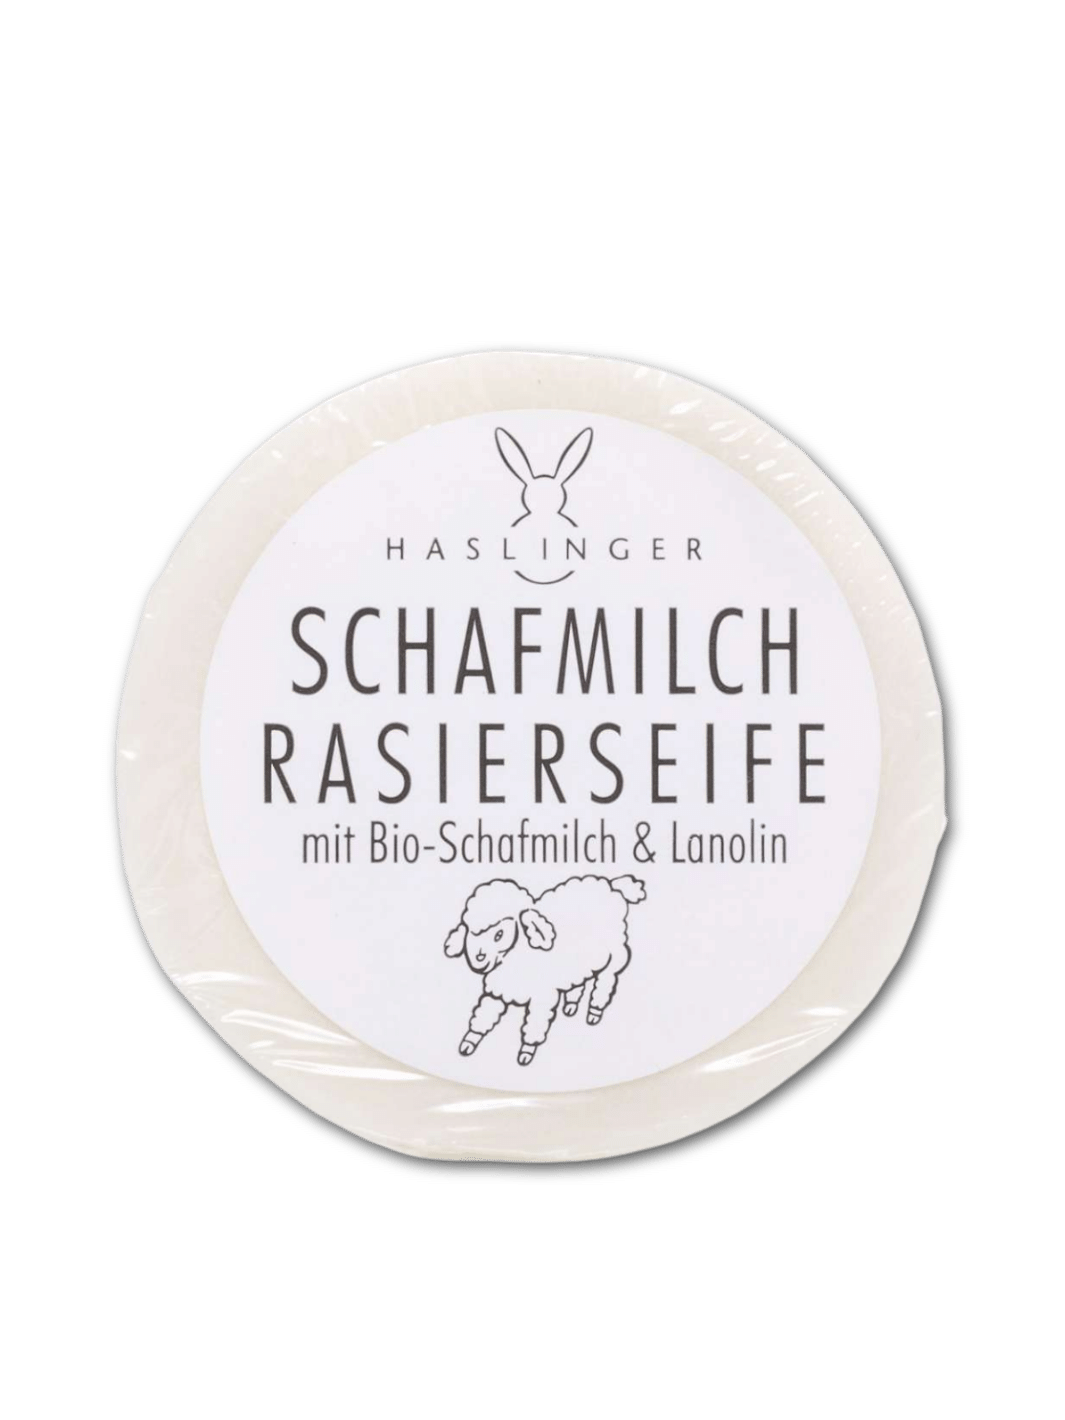 Haslinger Rasierseife mit Schafmilch und Lanolin in einer 60g Packung, erhältlich bei Phullcutz, ideal für eine sanfte und pflegende Rasur, auf weißem Hintergrund.